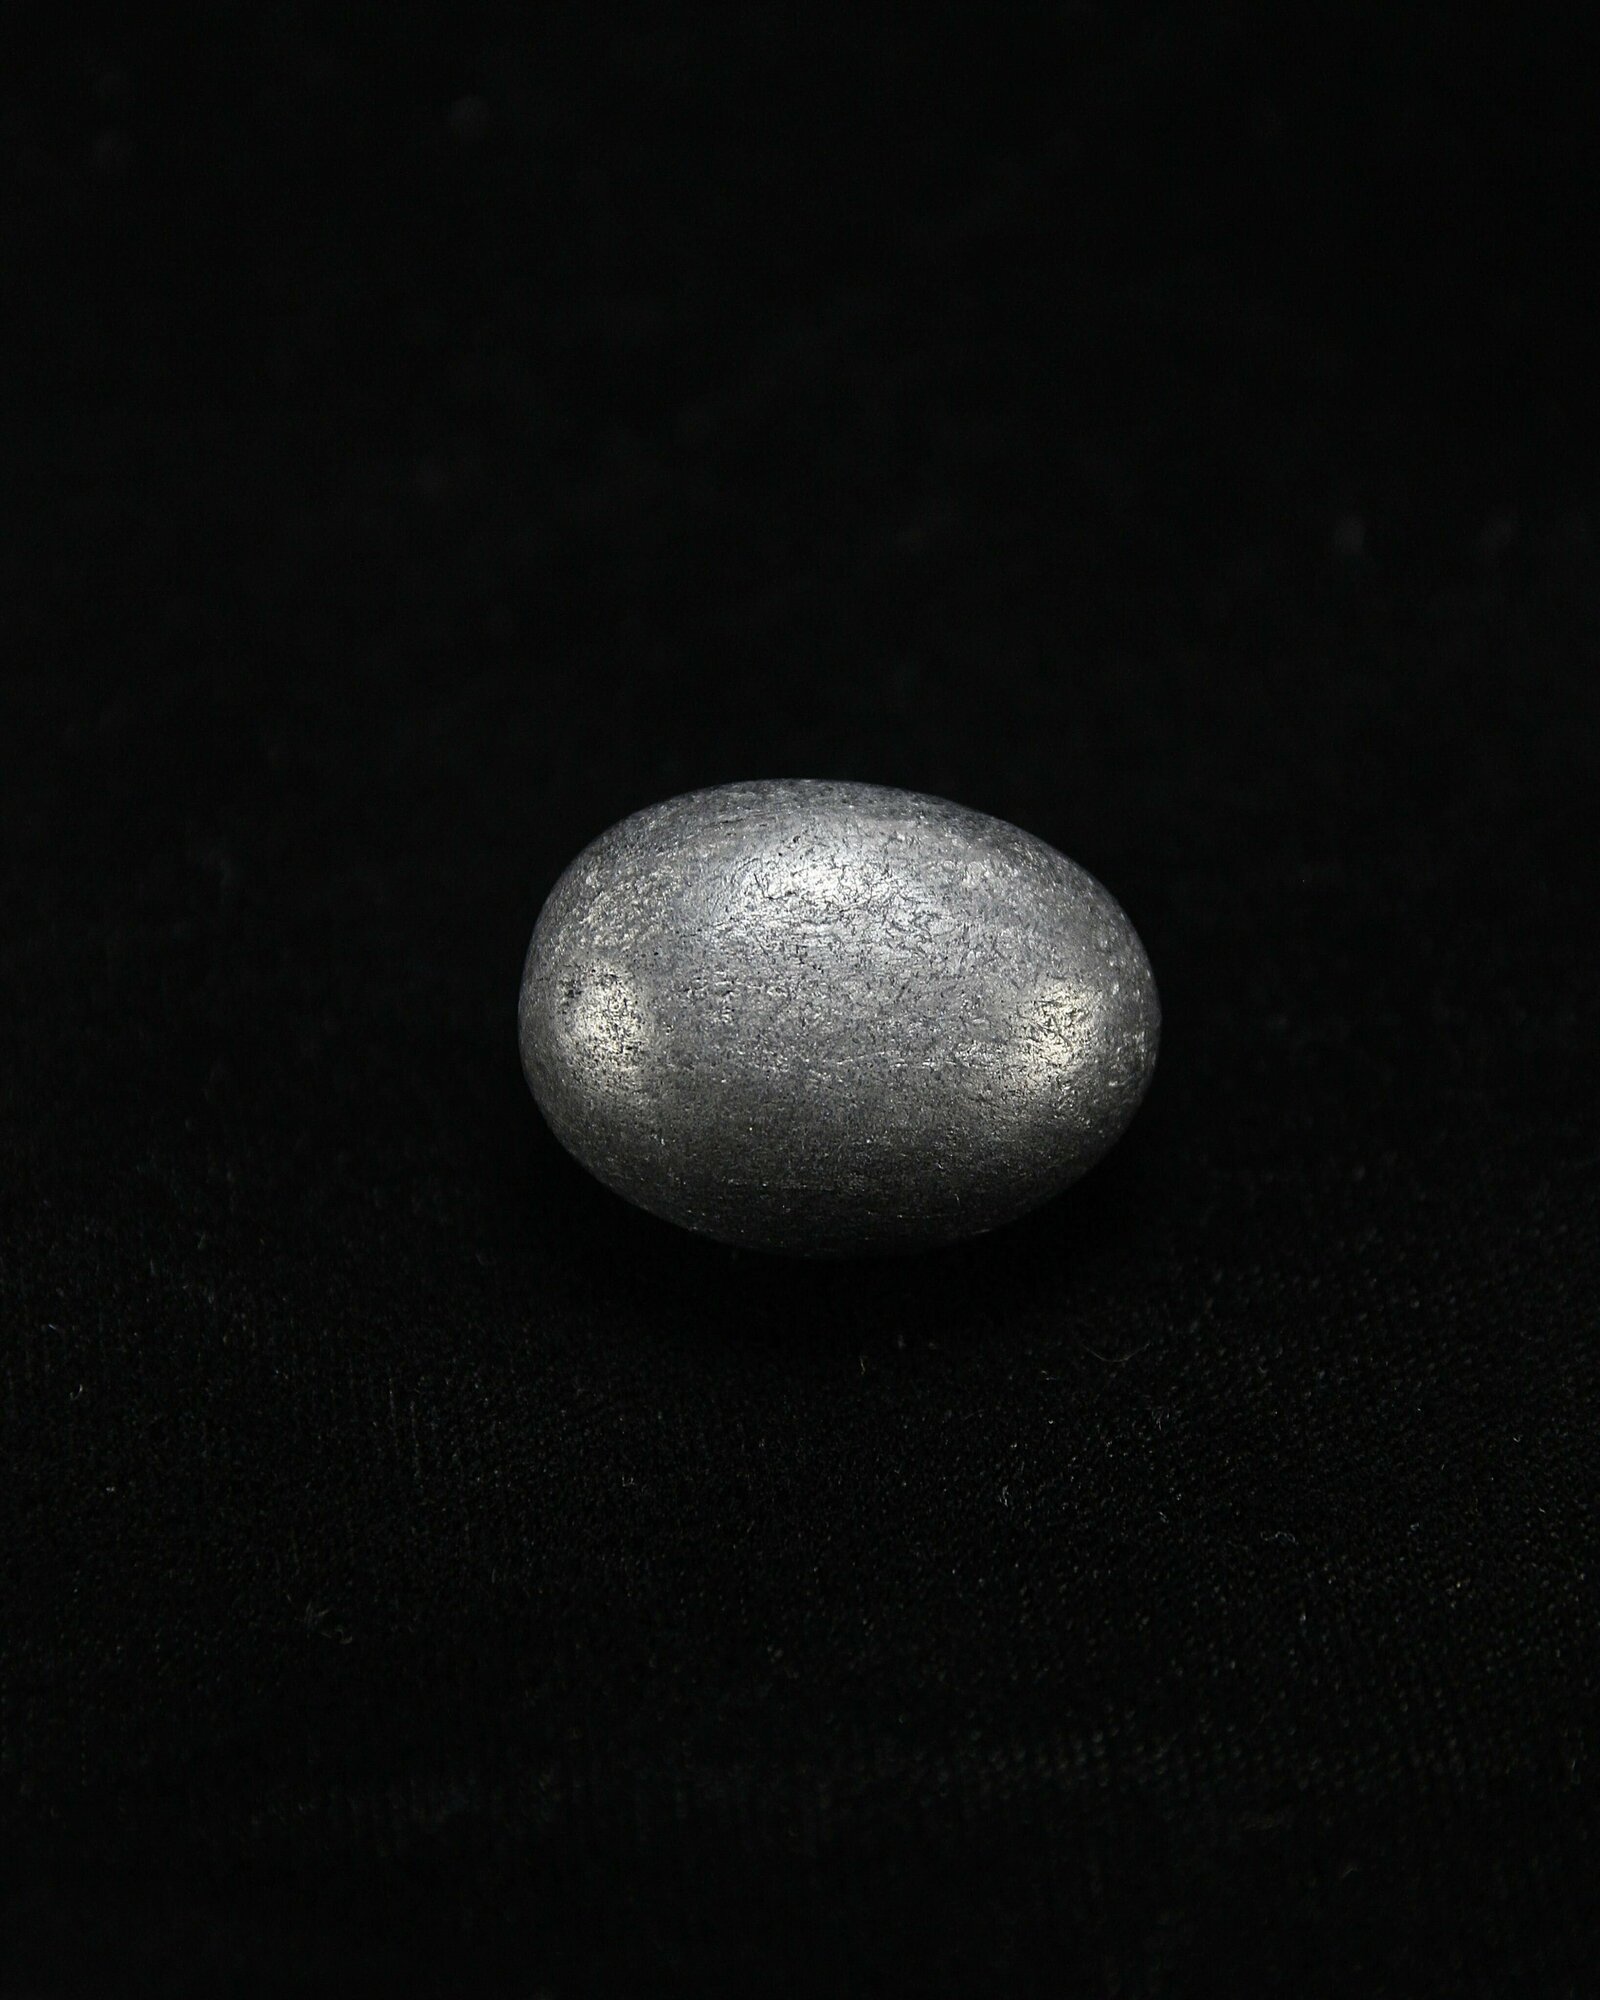 Натуральный камень Галтовка Шунгит для декора, поделок, бижутерии, 2 см, 1 шт